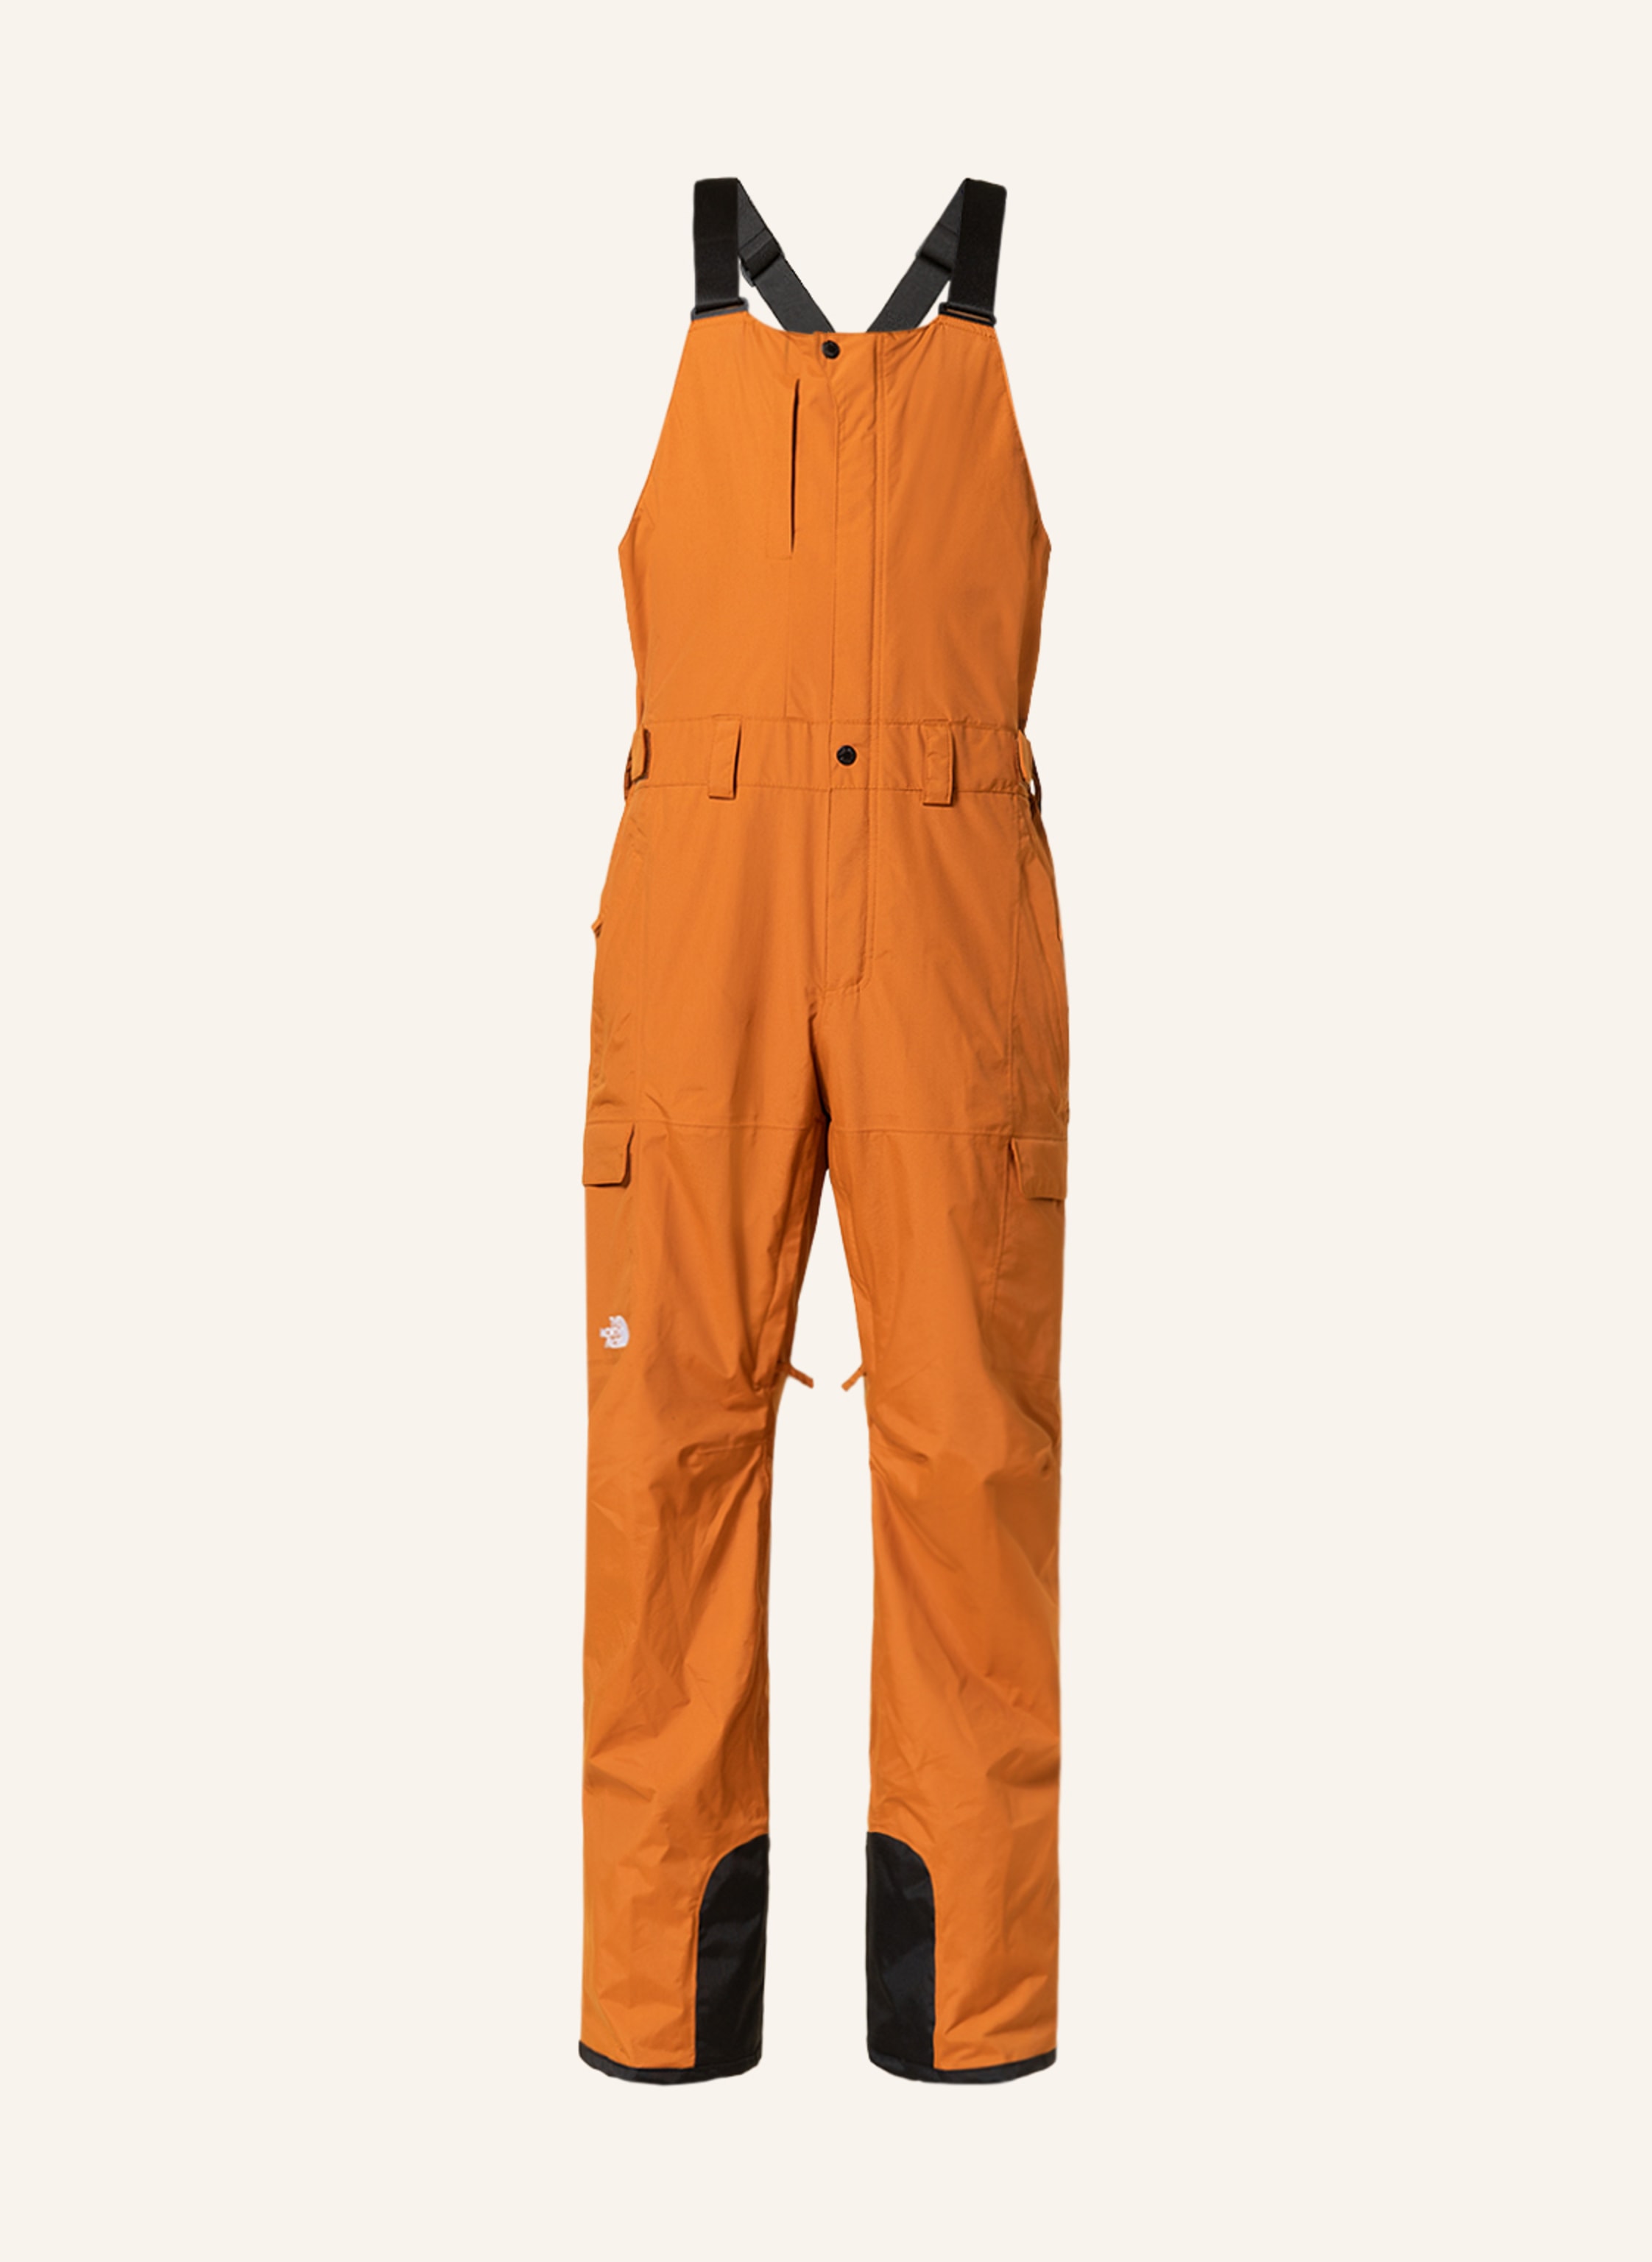 THE NORTH FACE Ski pants FREEDOM in dark orange/ black